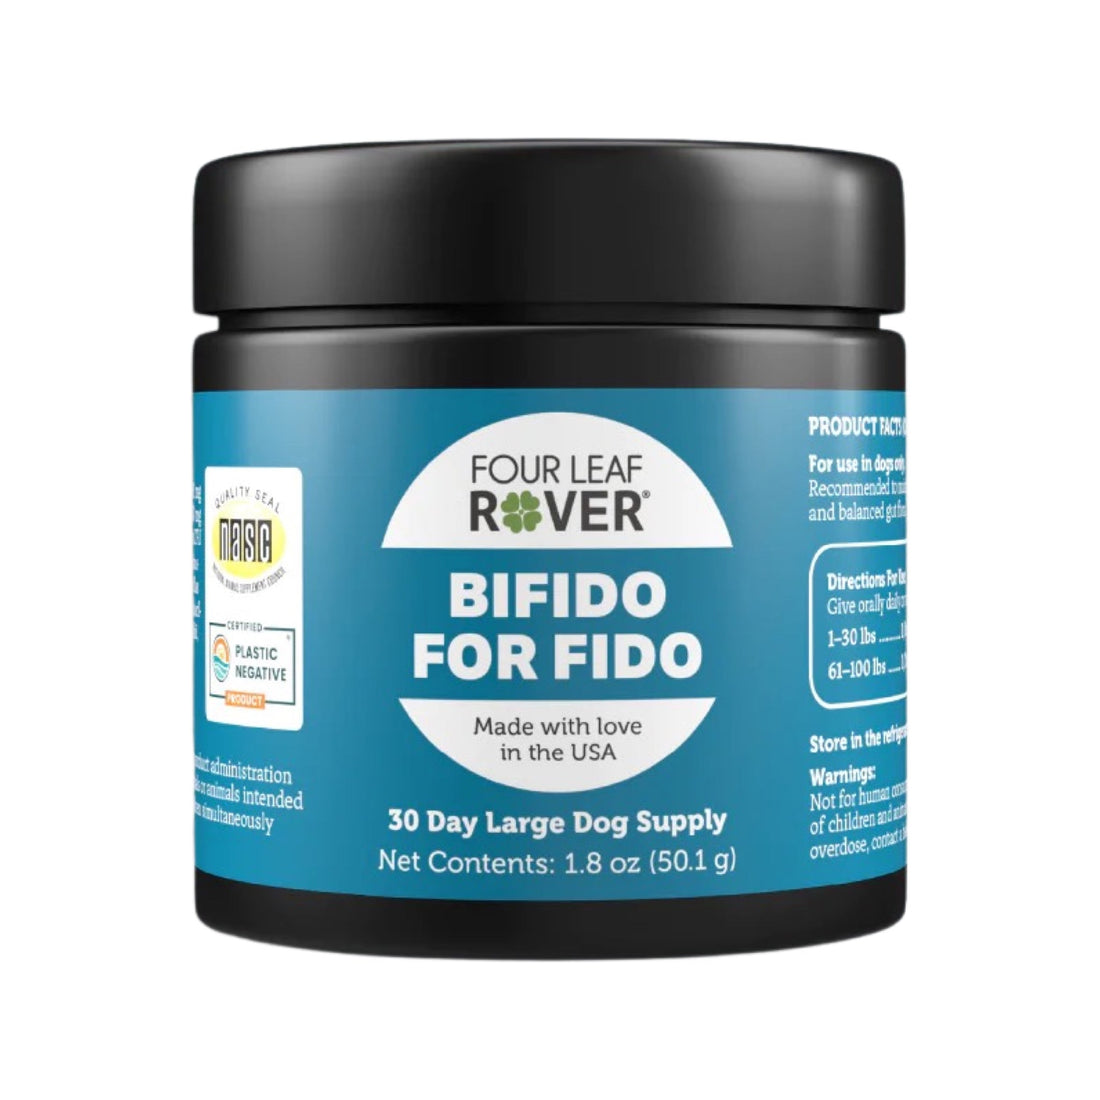 BiFido for Fido - Woof Living